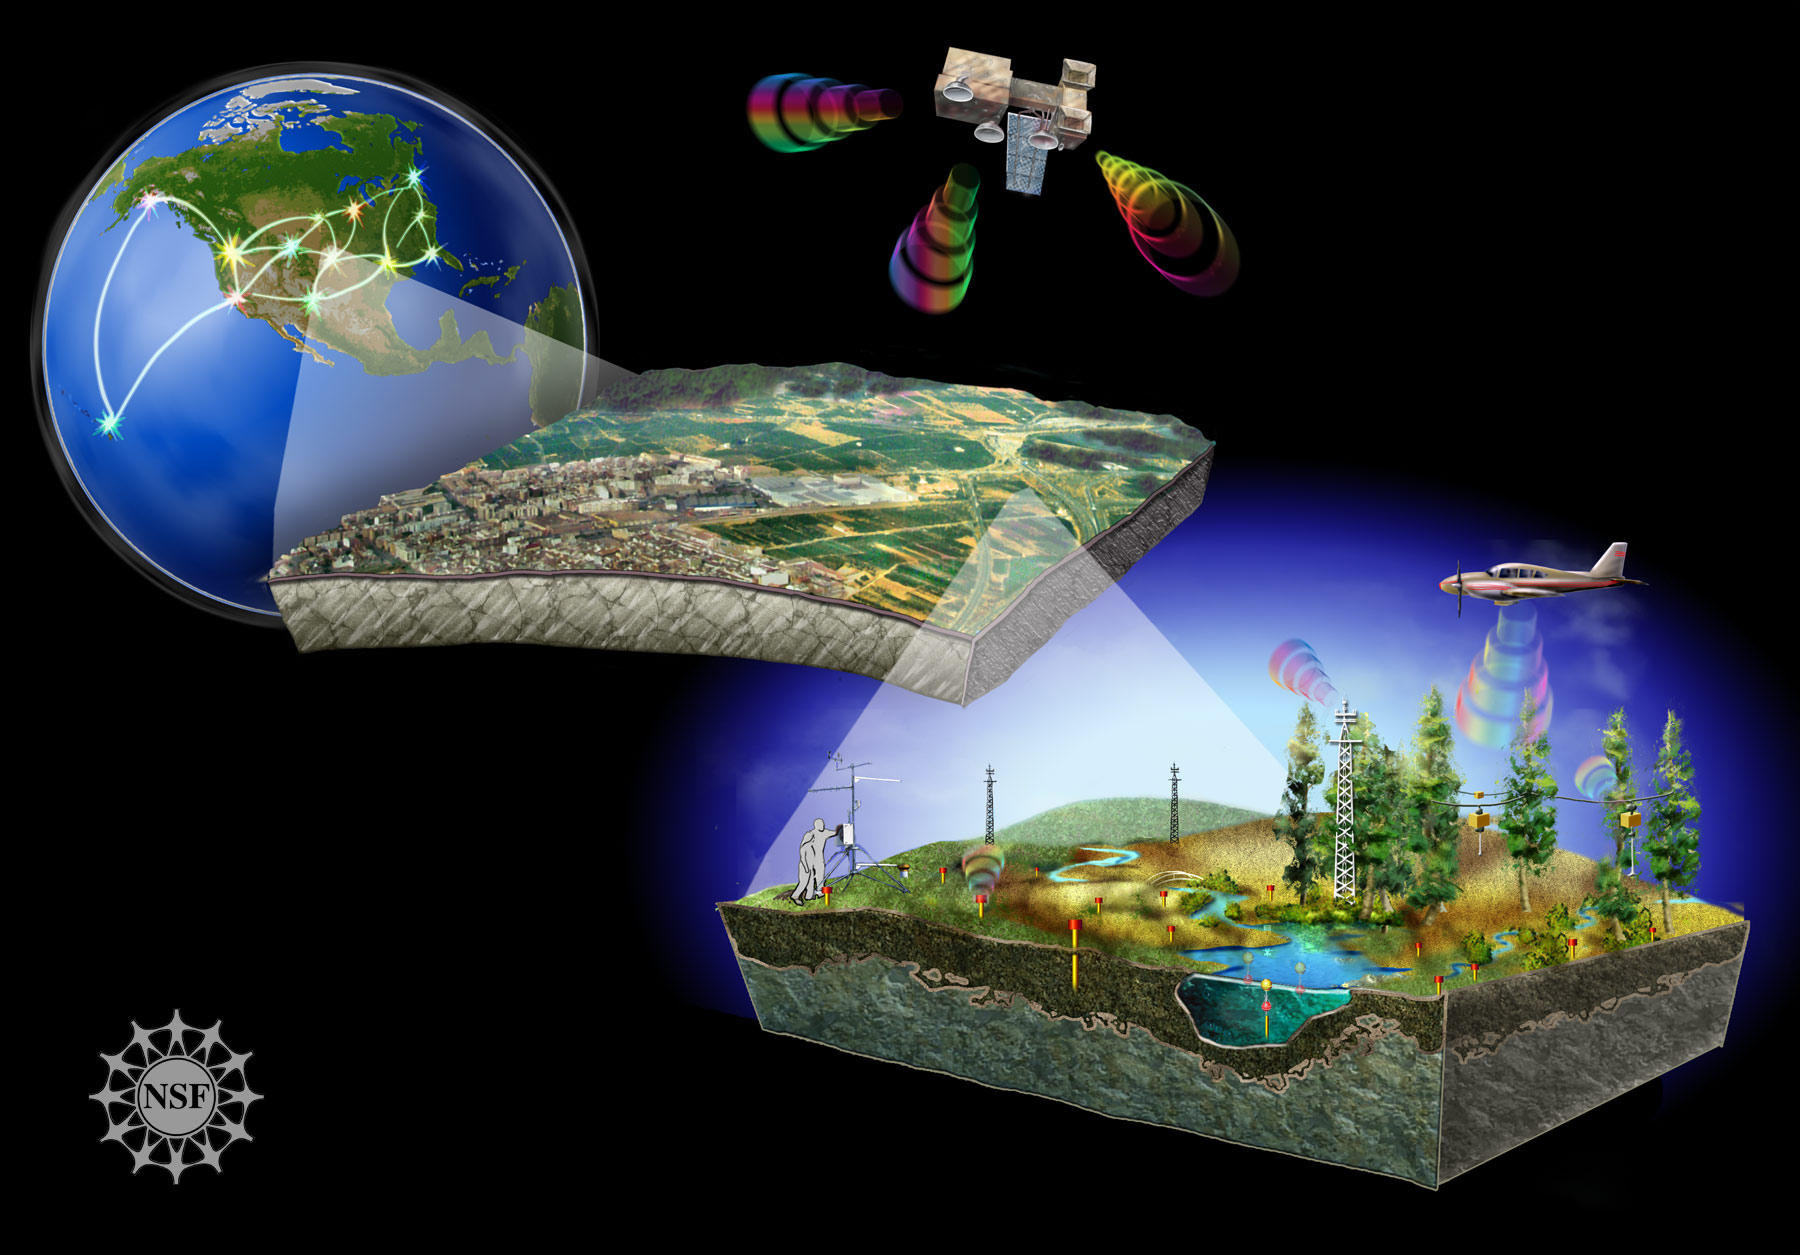 Sensing is life. Спутники дистанционного зондирования земли. Дистанционное зондирование земли. Космическая съемка земли. Дистанционное зондирование земли и мониторинг.